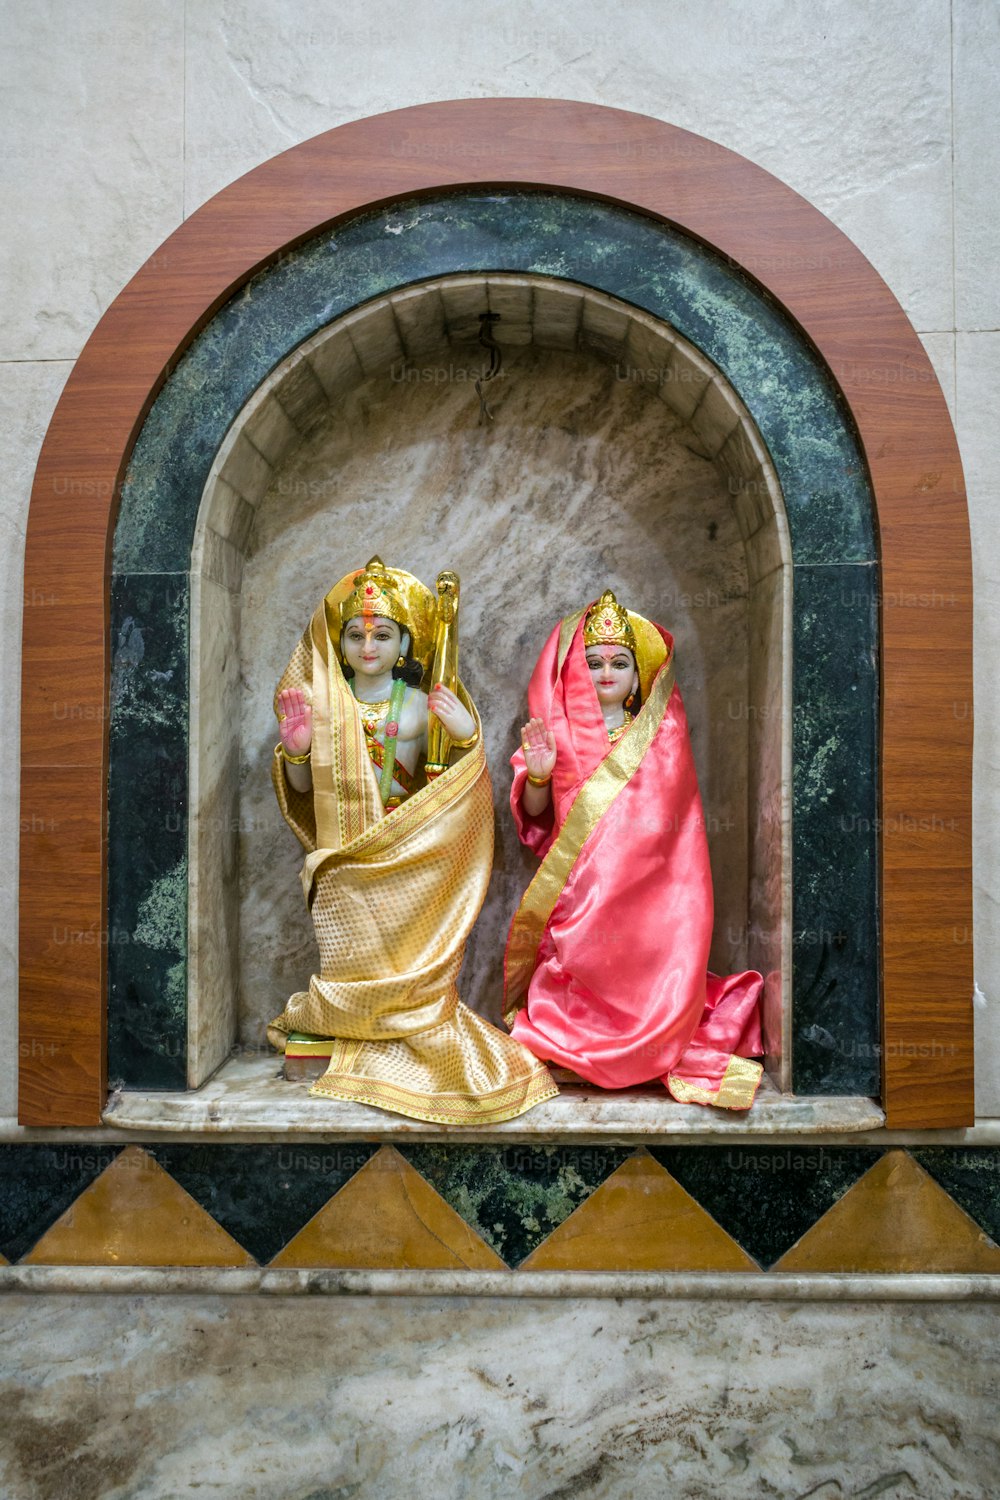 틈새 시장에 있는 두 여성의 동상